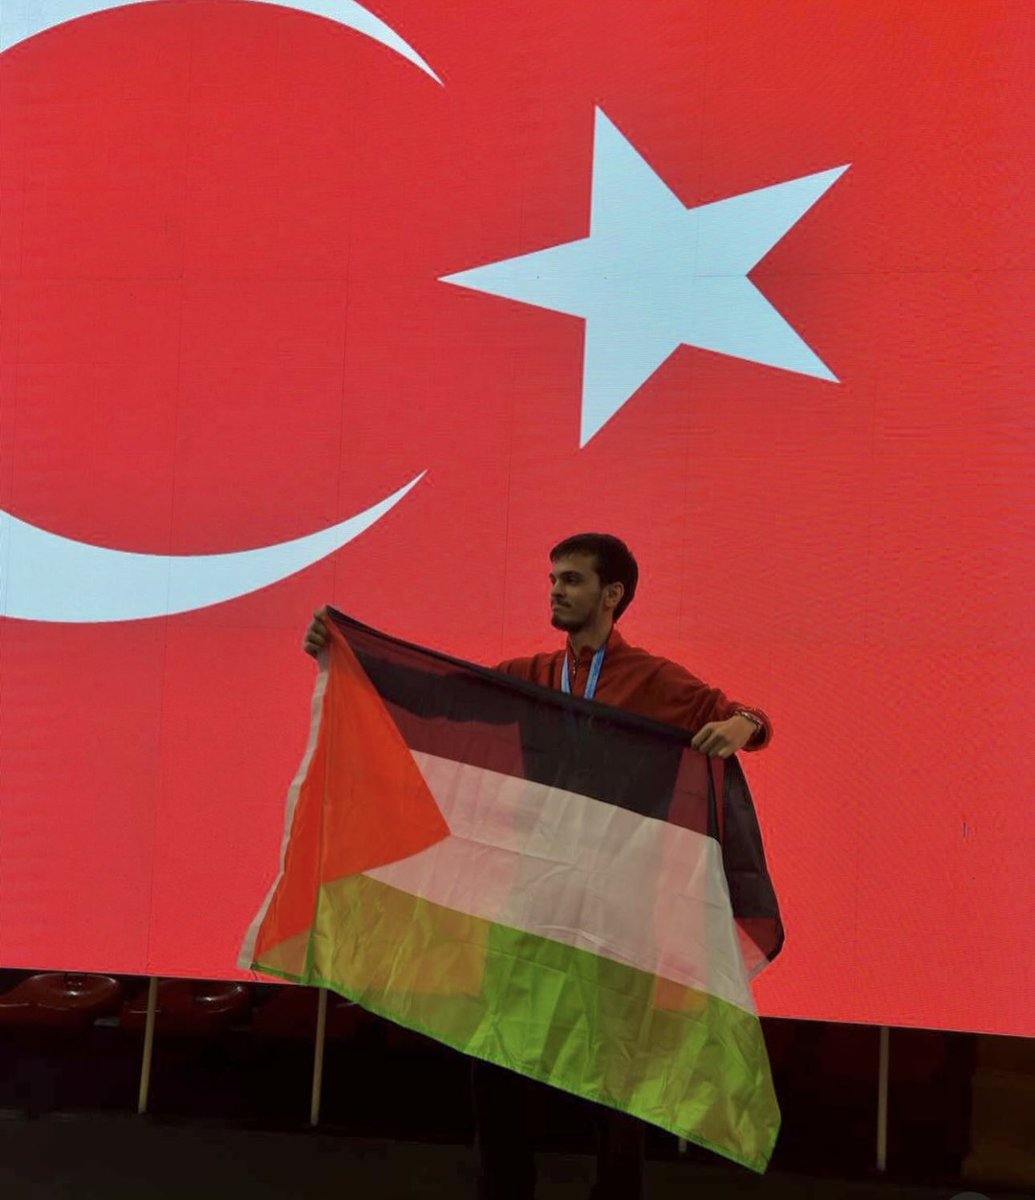 Das ist Necmettin Akyüz. Nachdem er den ersten Platz bei der Kung Fu Meisterschaft in Istanbul erreichte, nutzte er den Moment auf dem Siegerpodium, um mit der Flagge Palästinas in der Hand Solidarität mit den schutzlosen palästinensischen Zivilisten zu zeigen. Nun soll der…